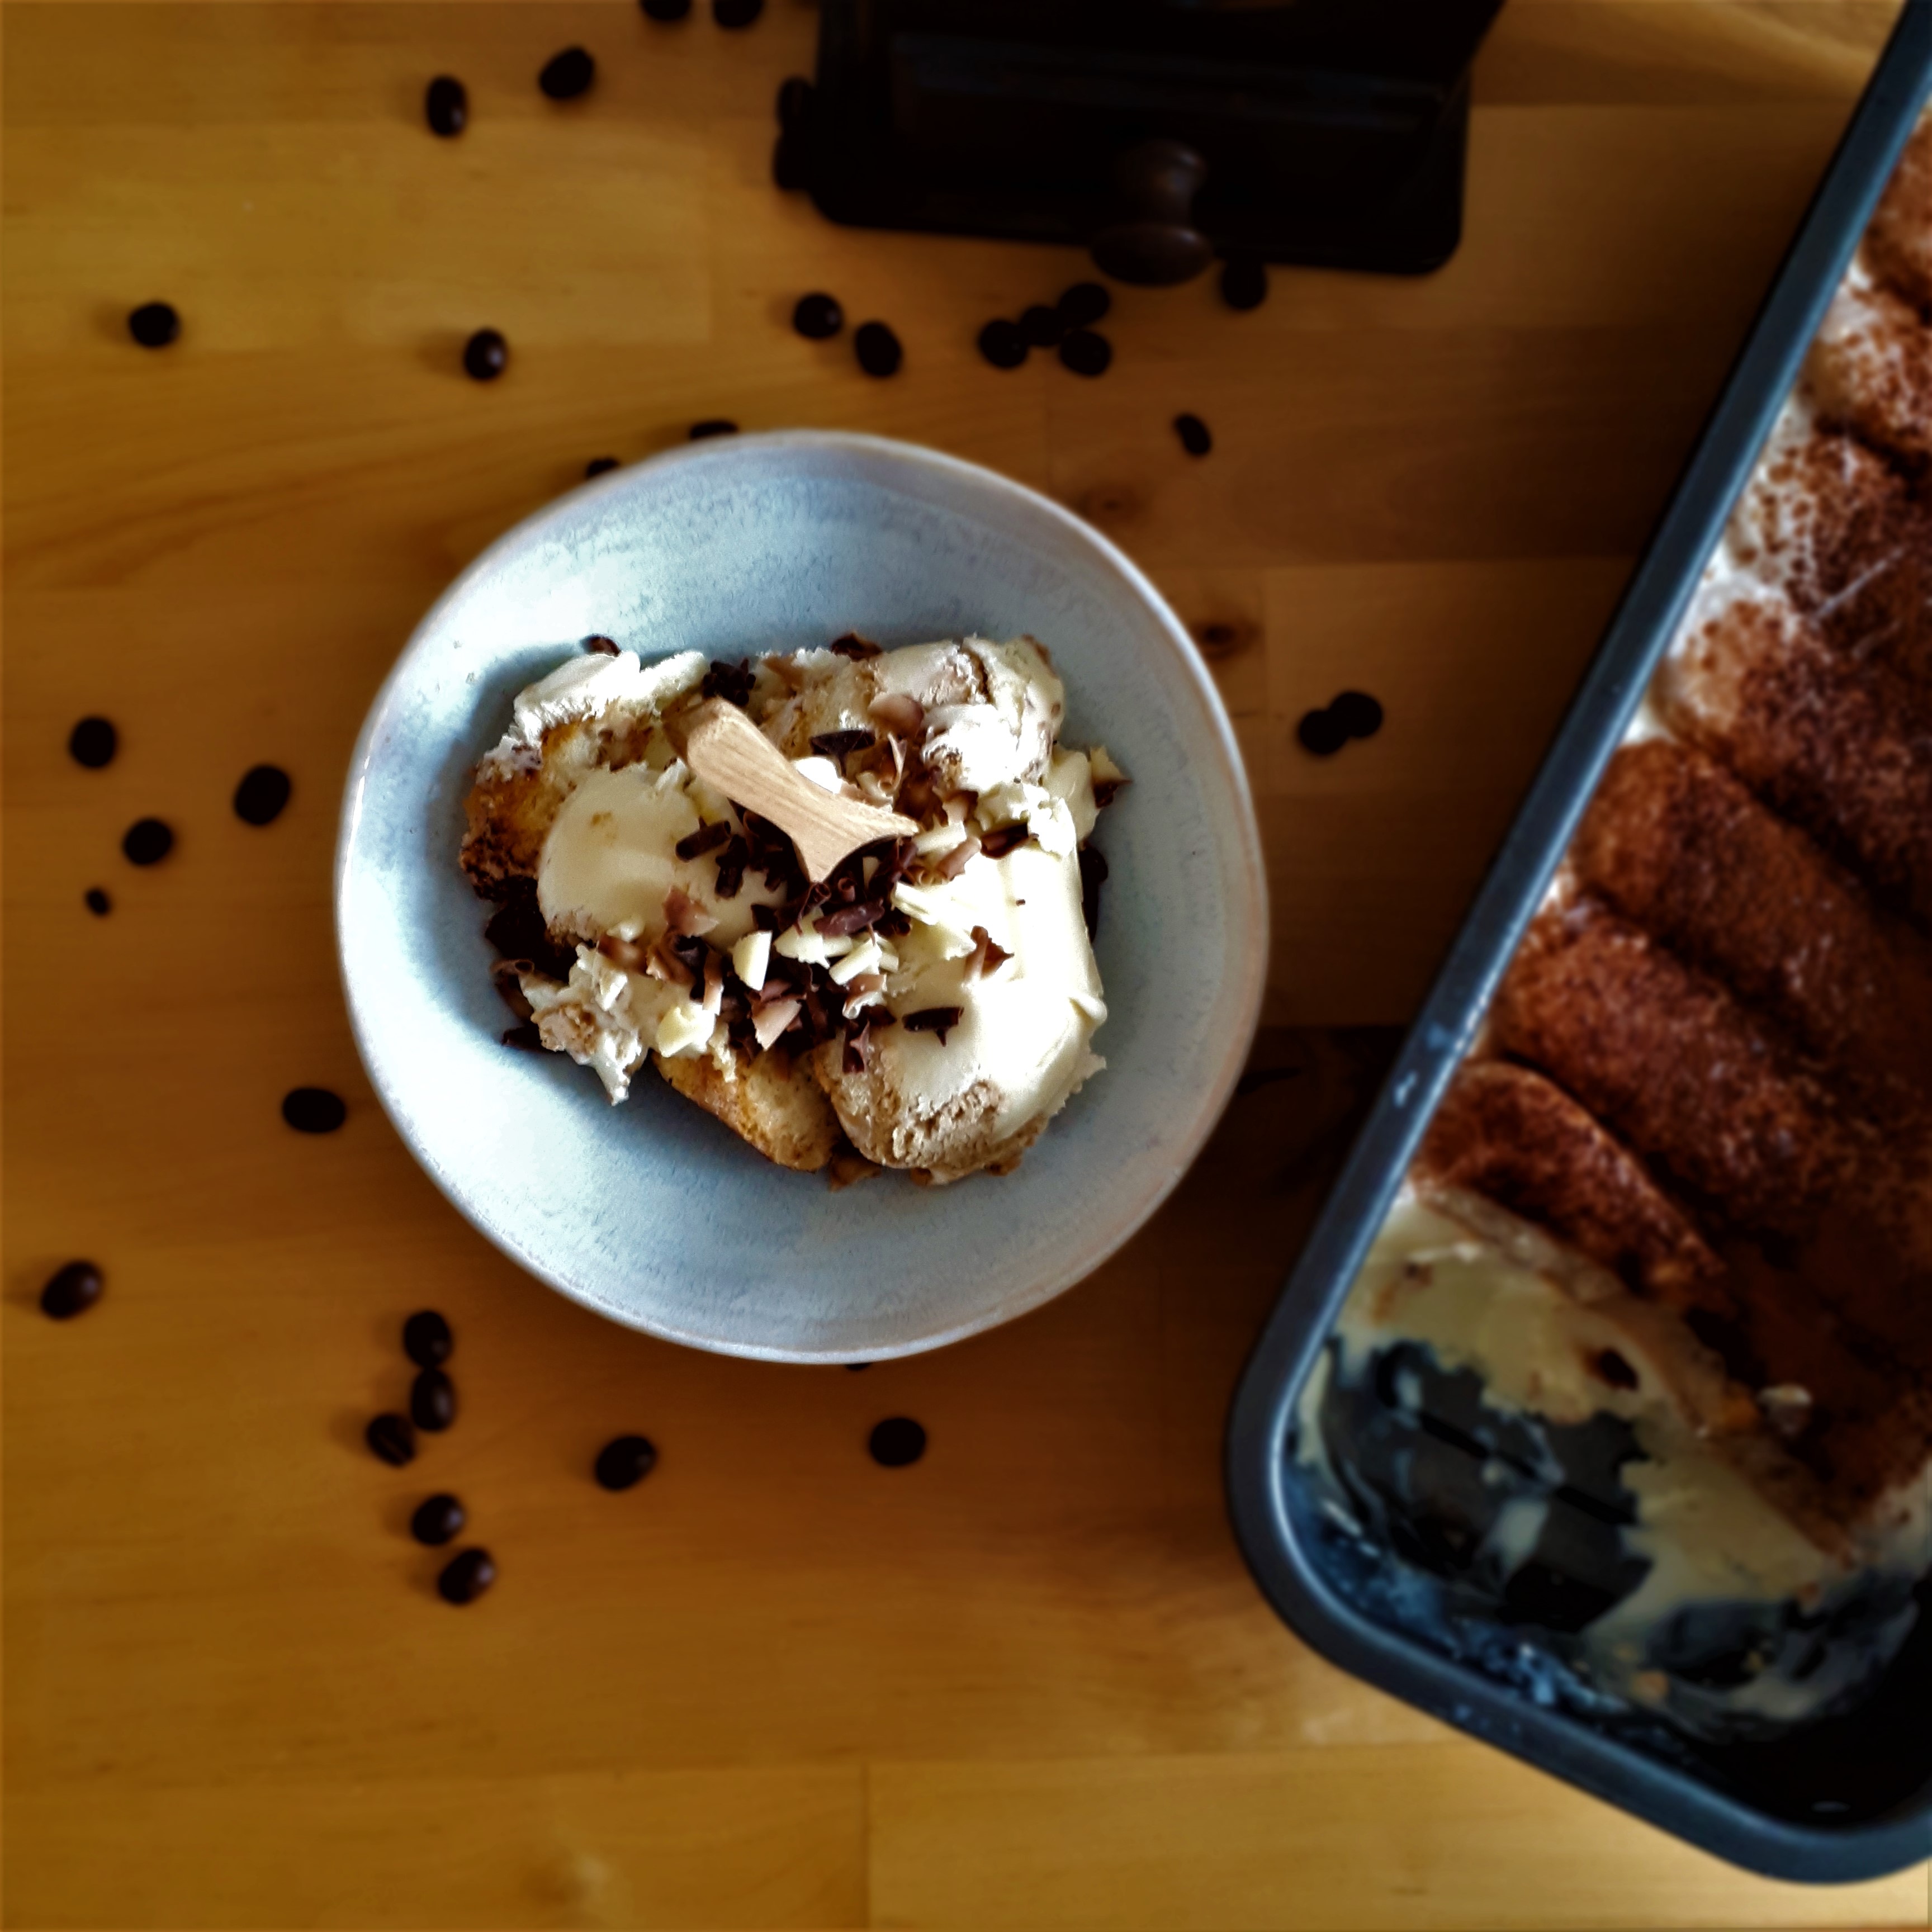 Svetlo-modrá miska s tiramisu zmrzlinou s kúskami cukárskych piškótov posypaná hoblinkami z horkej, mliečnej a bielej čokolády drevená lyžička vysypané zrnká kávy chlebíková forma s tiramisu zmrzlinou mlynček na kávu